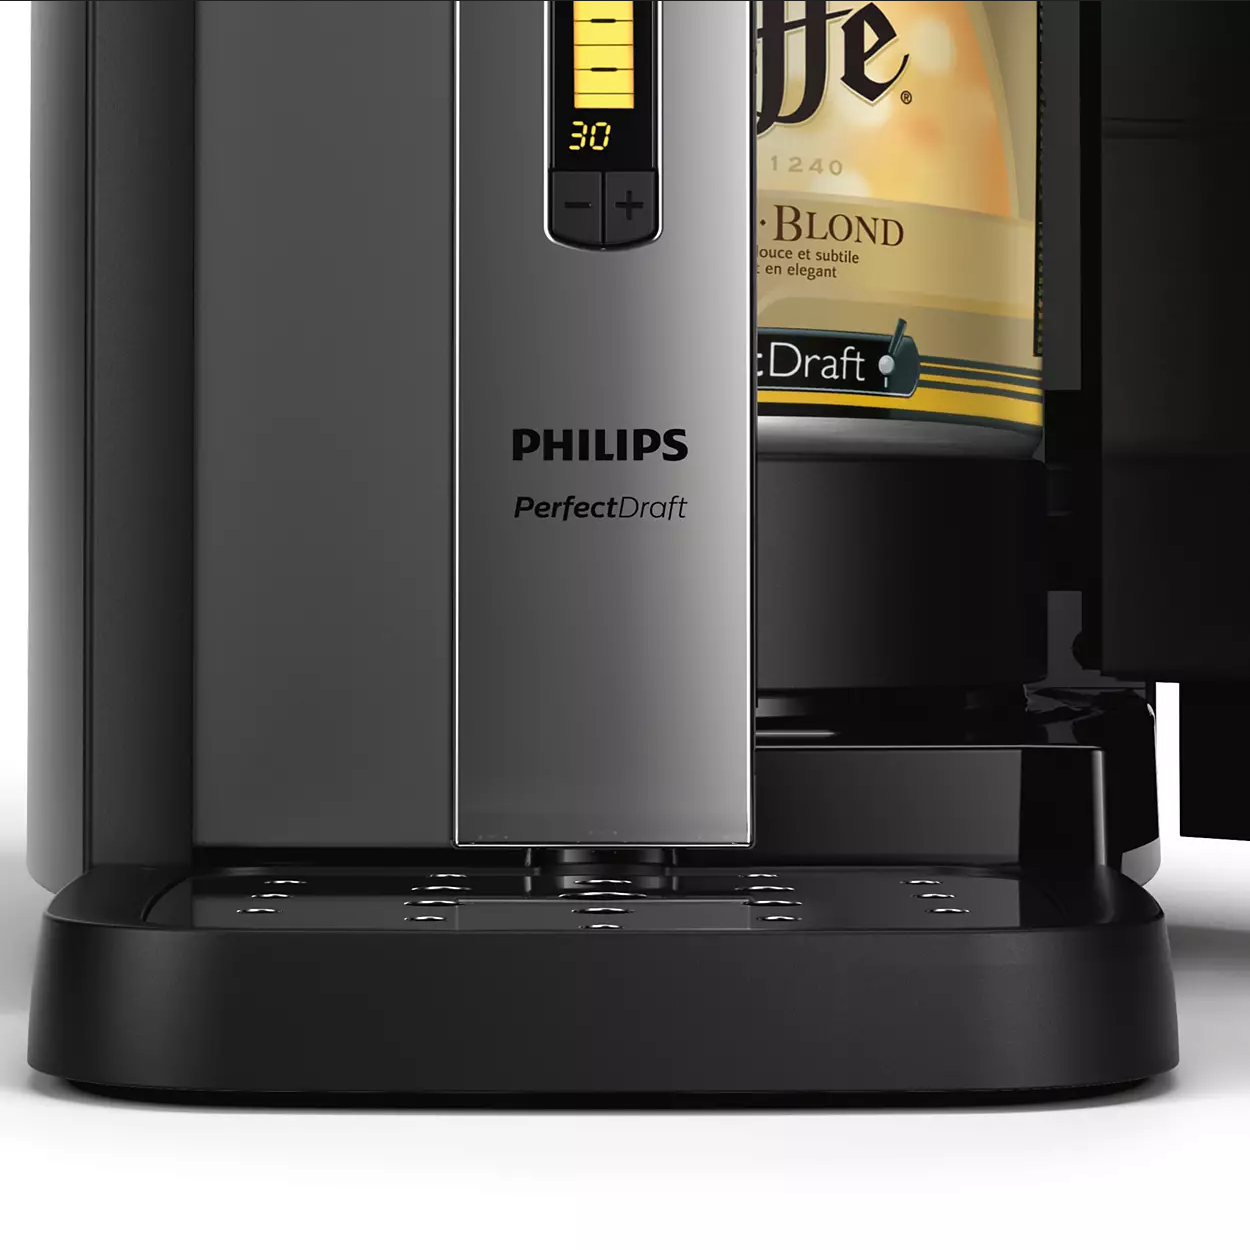 Philips HD3720/25 PerfectDraft - Bierzapfanlage für zu Hause Silber/Schwarz 